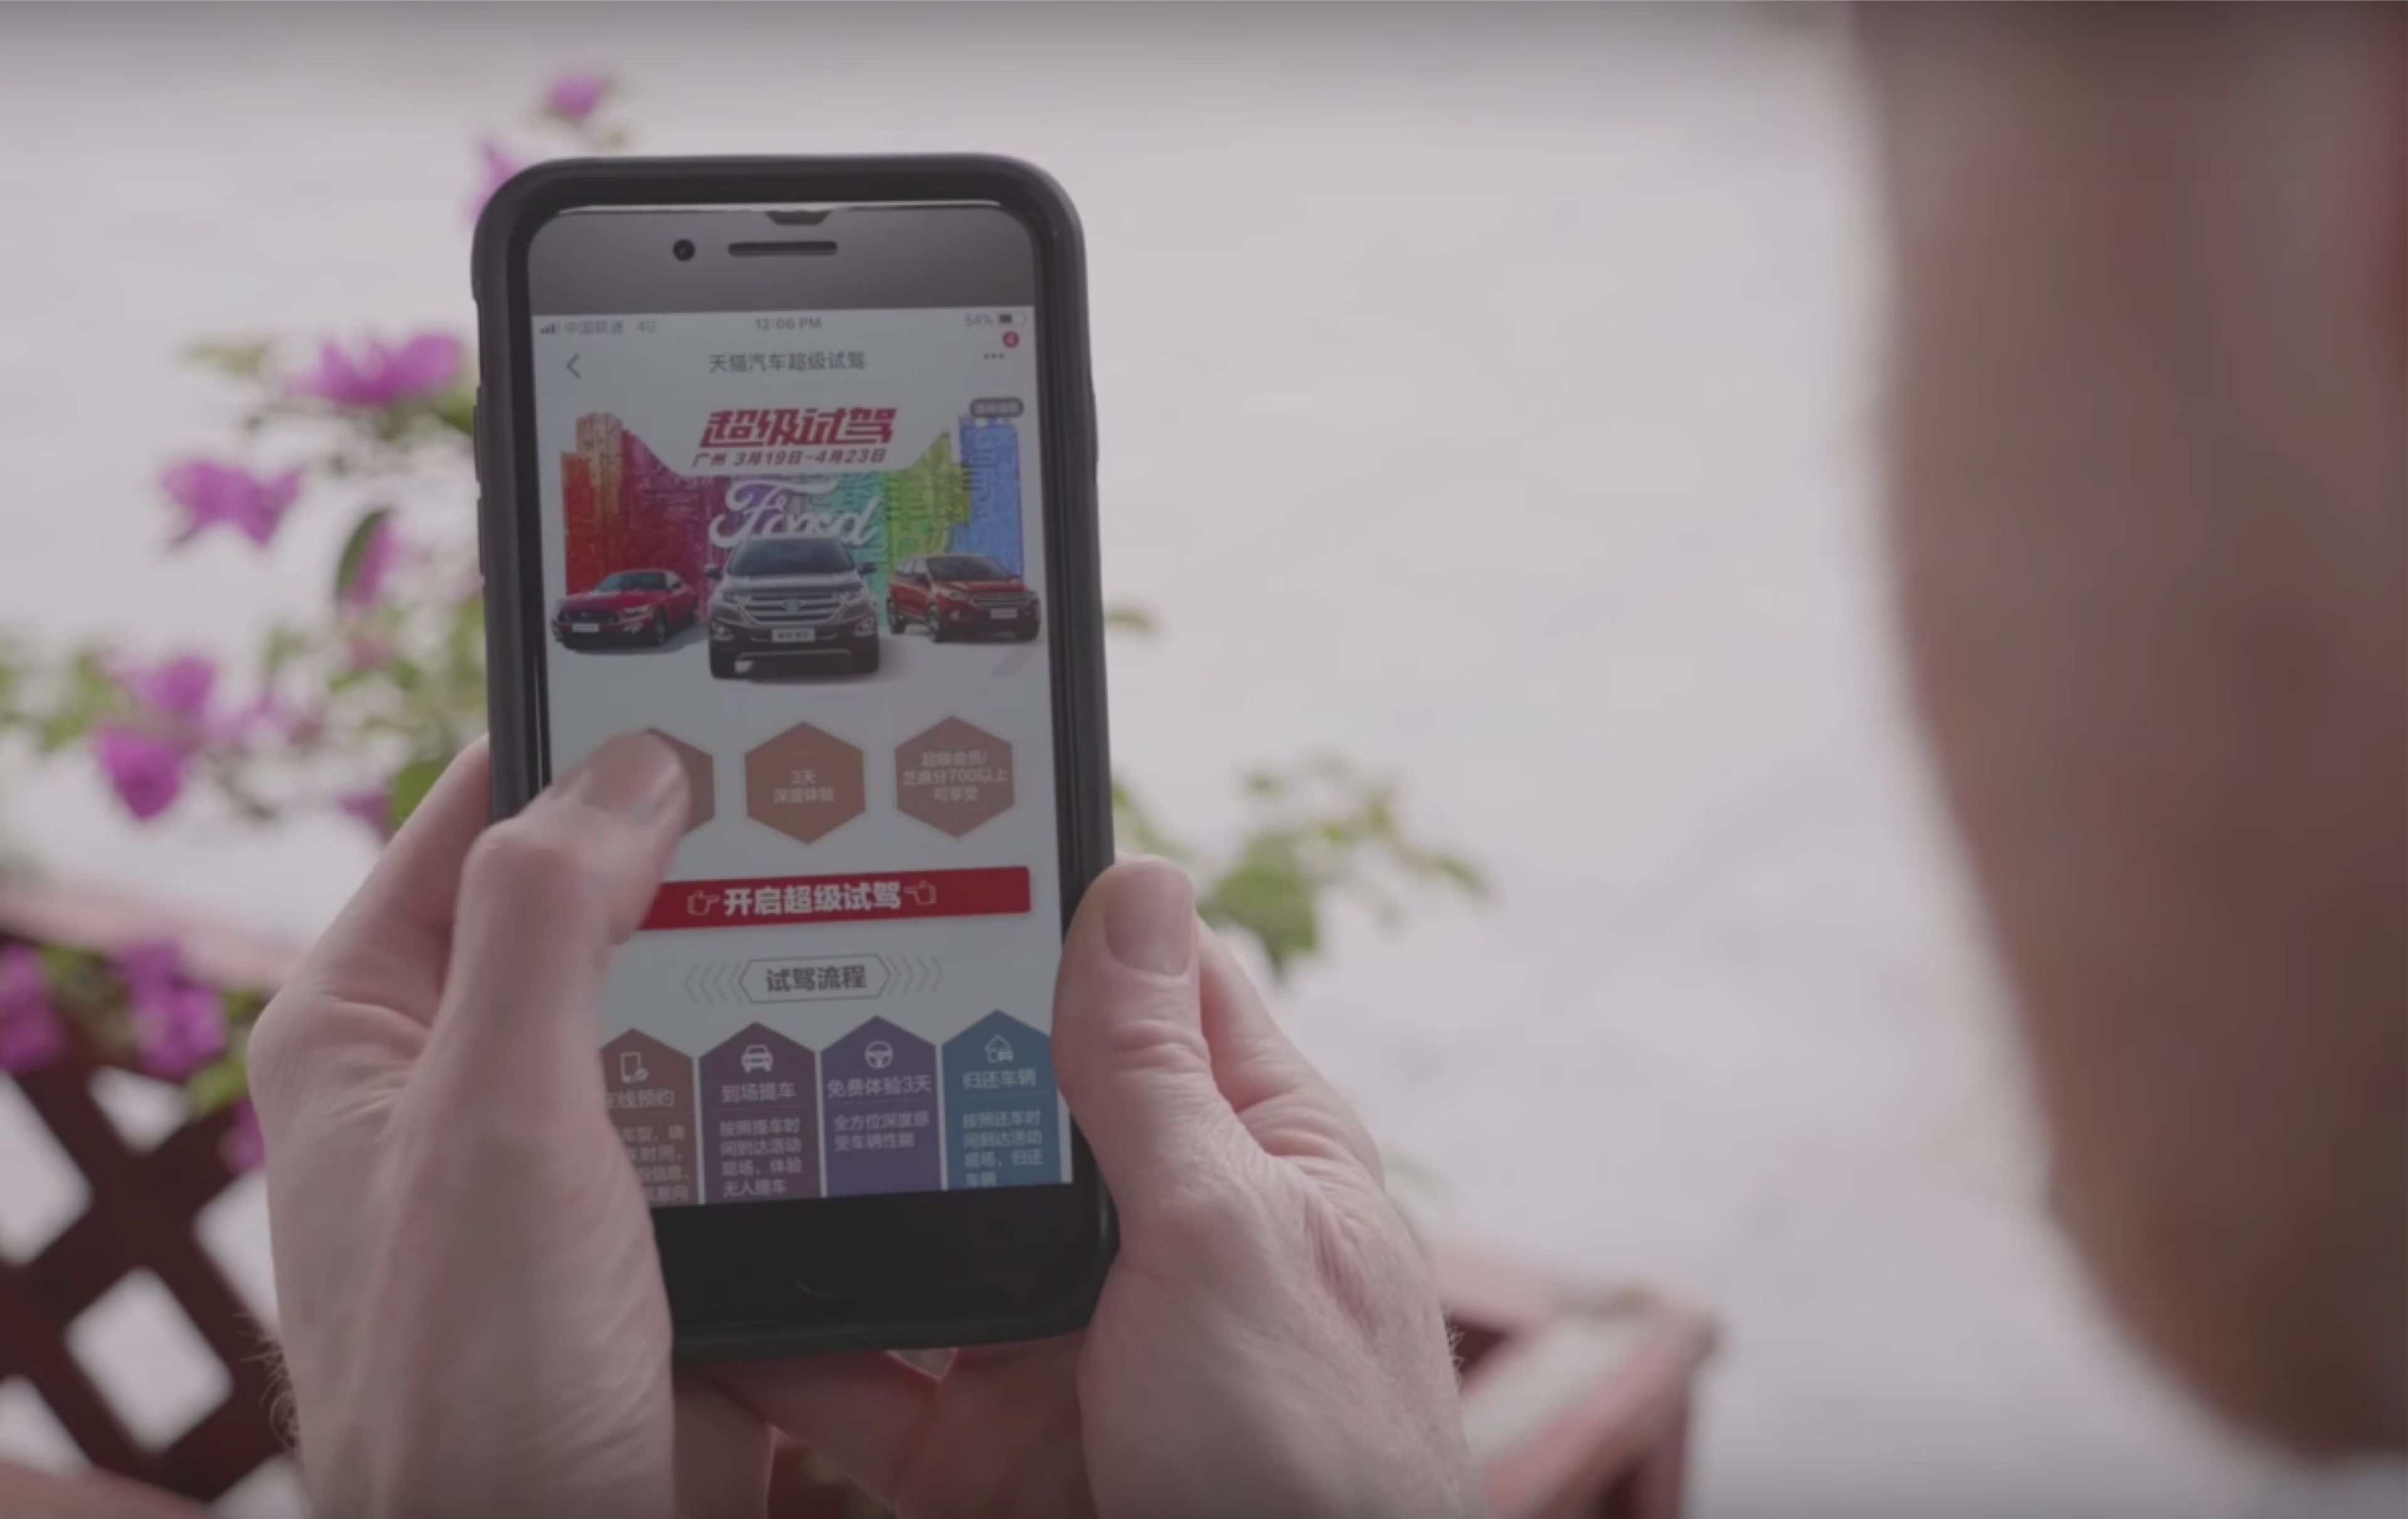 La experiencia de compra en la máquina de vending se inicia a través de una de las app de Alibaba.